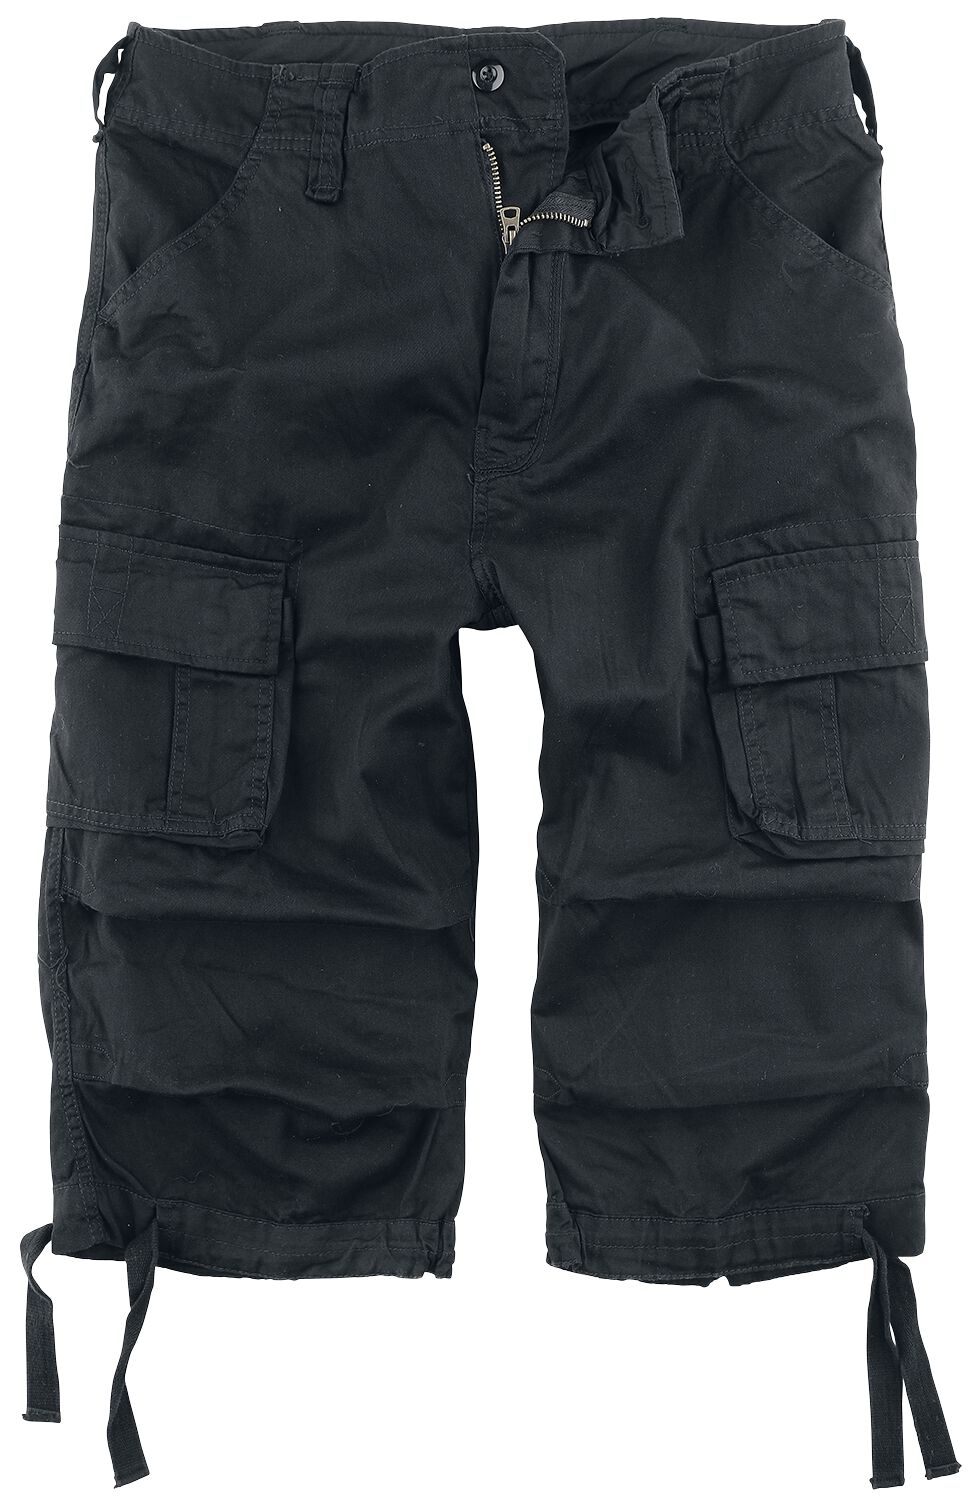 Brandit Urban Legend 3/4 Shorts Short schwarz in L